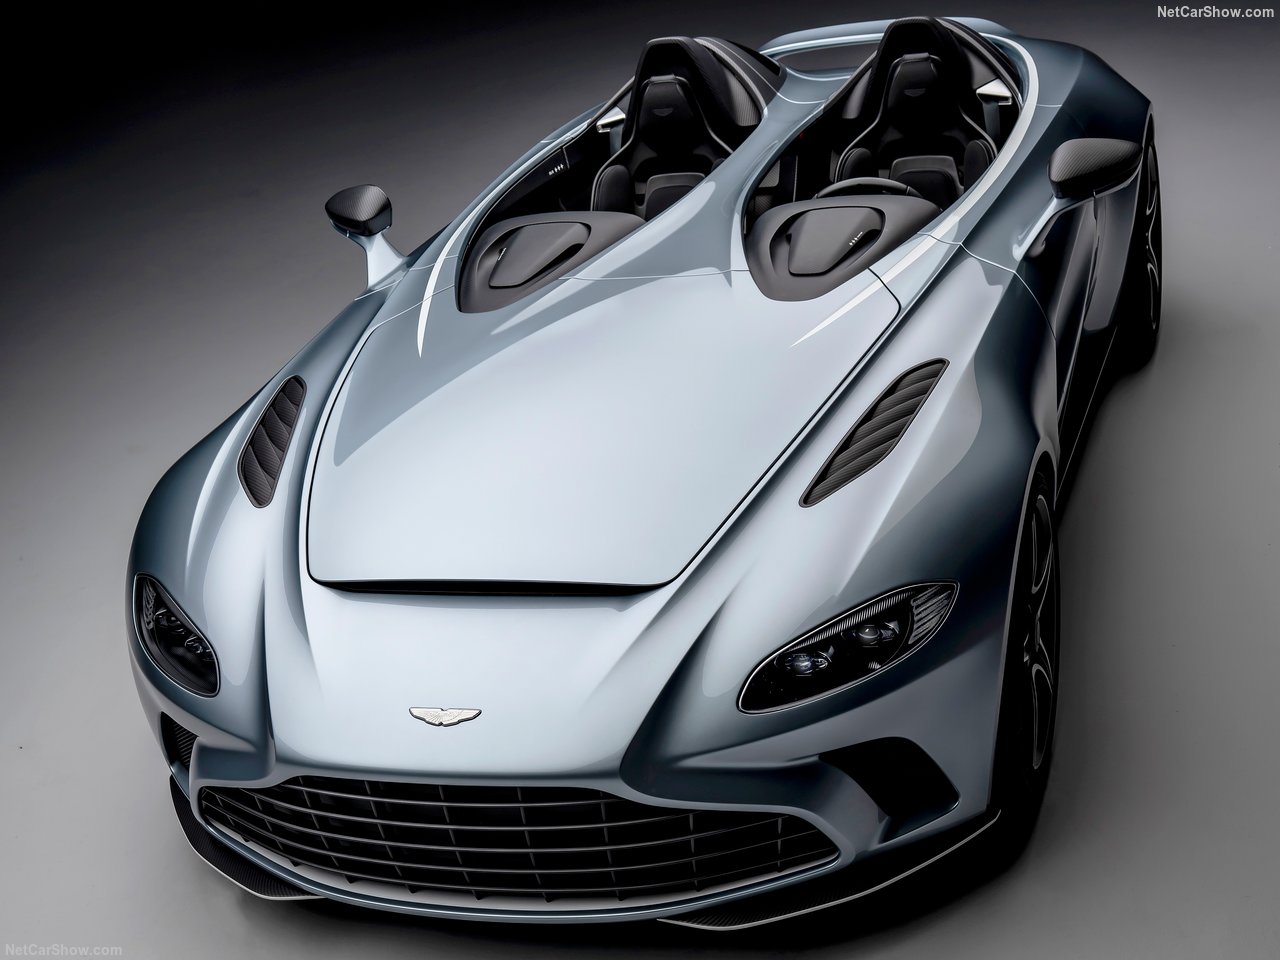 2021 Aston Martin V12 Speedster #AstonMartin #V12 #Speedster #AstonMartinSpeedster #Concept